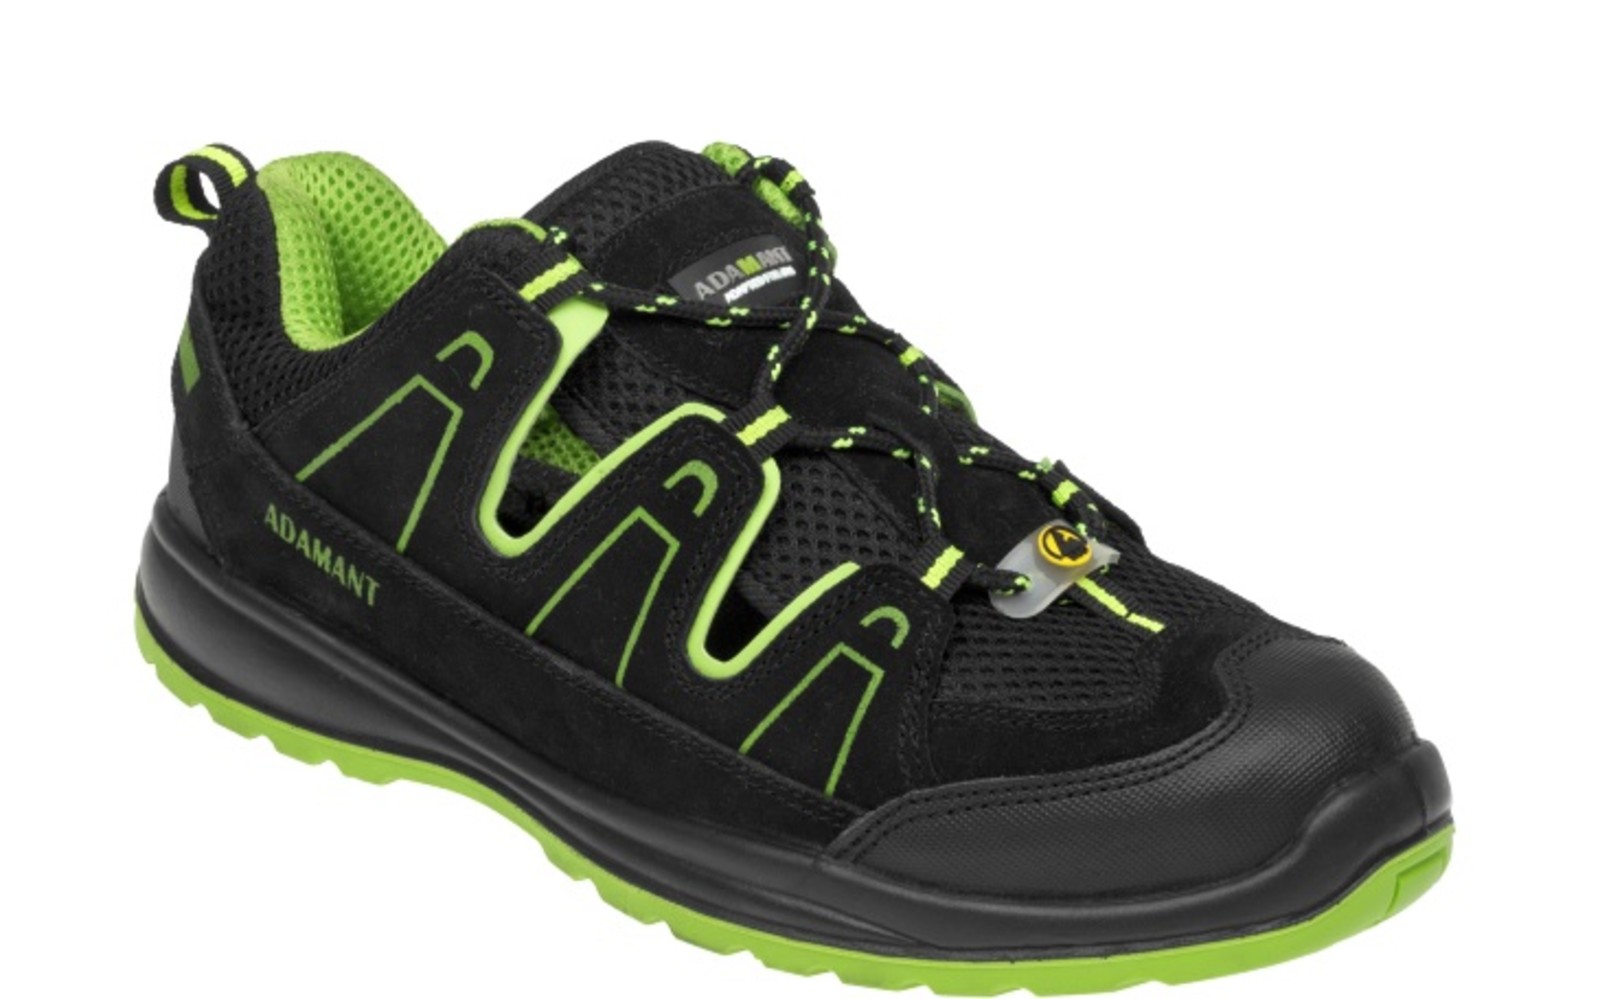 Bezpečnostné sandále Adamant Alegro S1 ESD - veľkosť: 39, farba: čierna/zelená